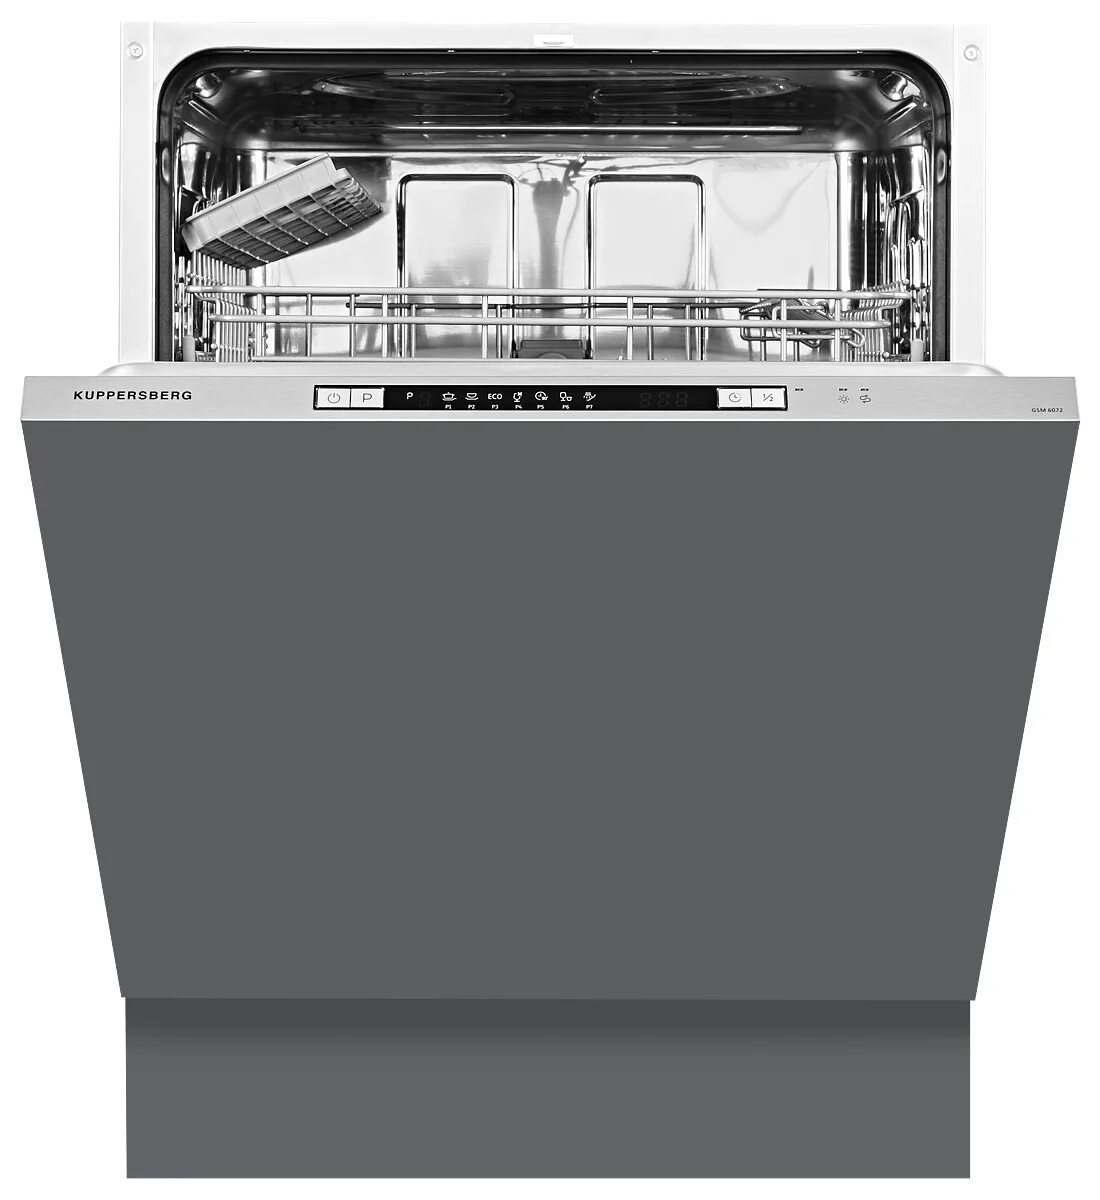 Встраиваемая посудомоечная машина Kuppersberg GSM 6072. Посудомоечная машина Kuppersberg GS 6005. Встраиваемая посудомоечная машина Kuppersberg GSM 6073. Куперсберг встраиваемые посудомоечные машины 60 см. Посудомоечная машина gsm 6074